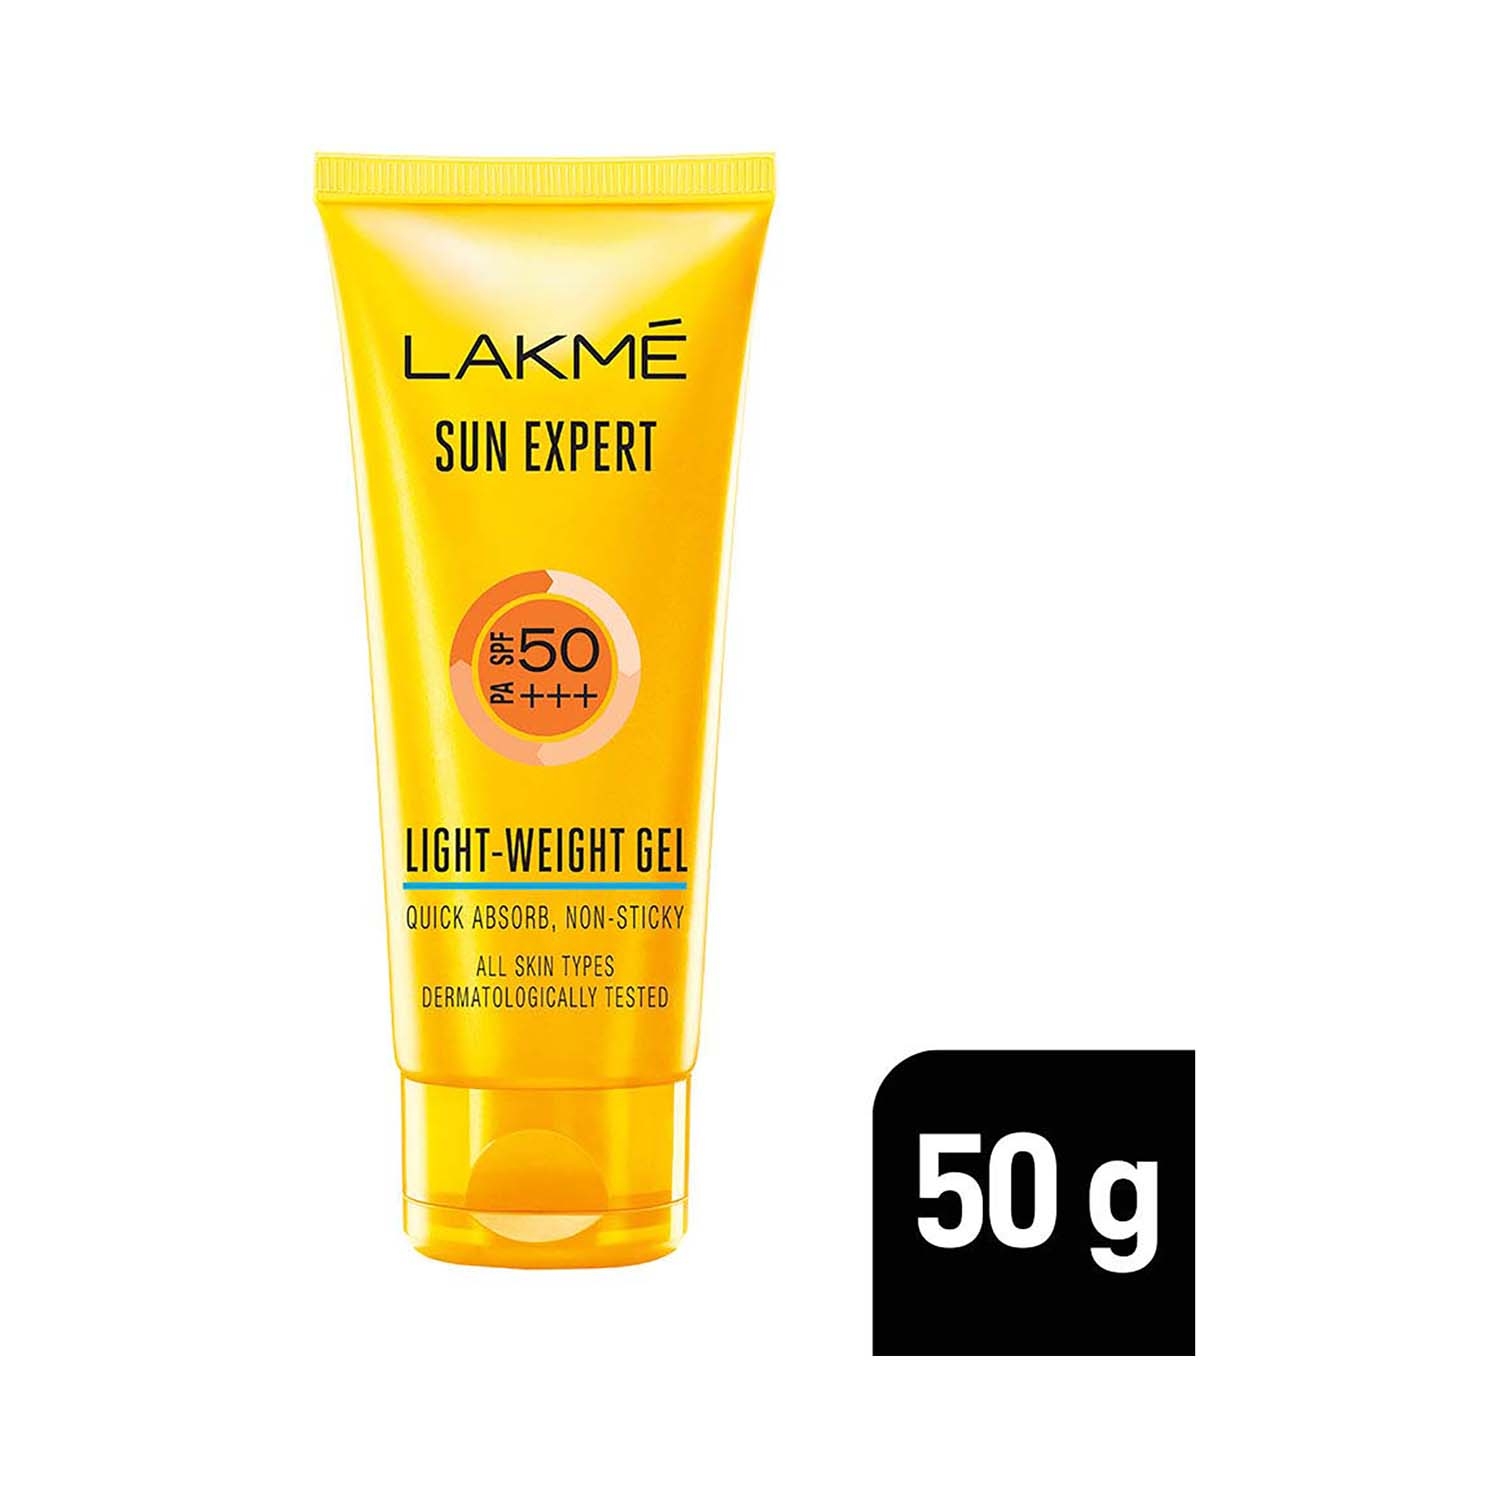 Lakme | Lakme Sun Expert SPF 50 Lightweight Gel (50g)